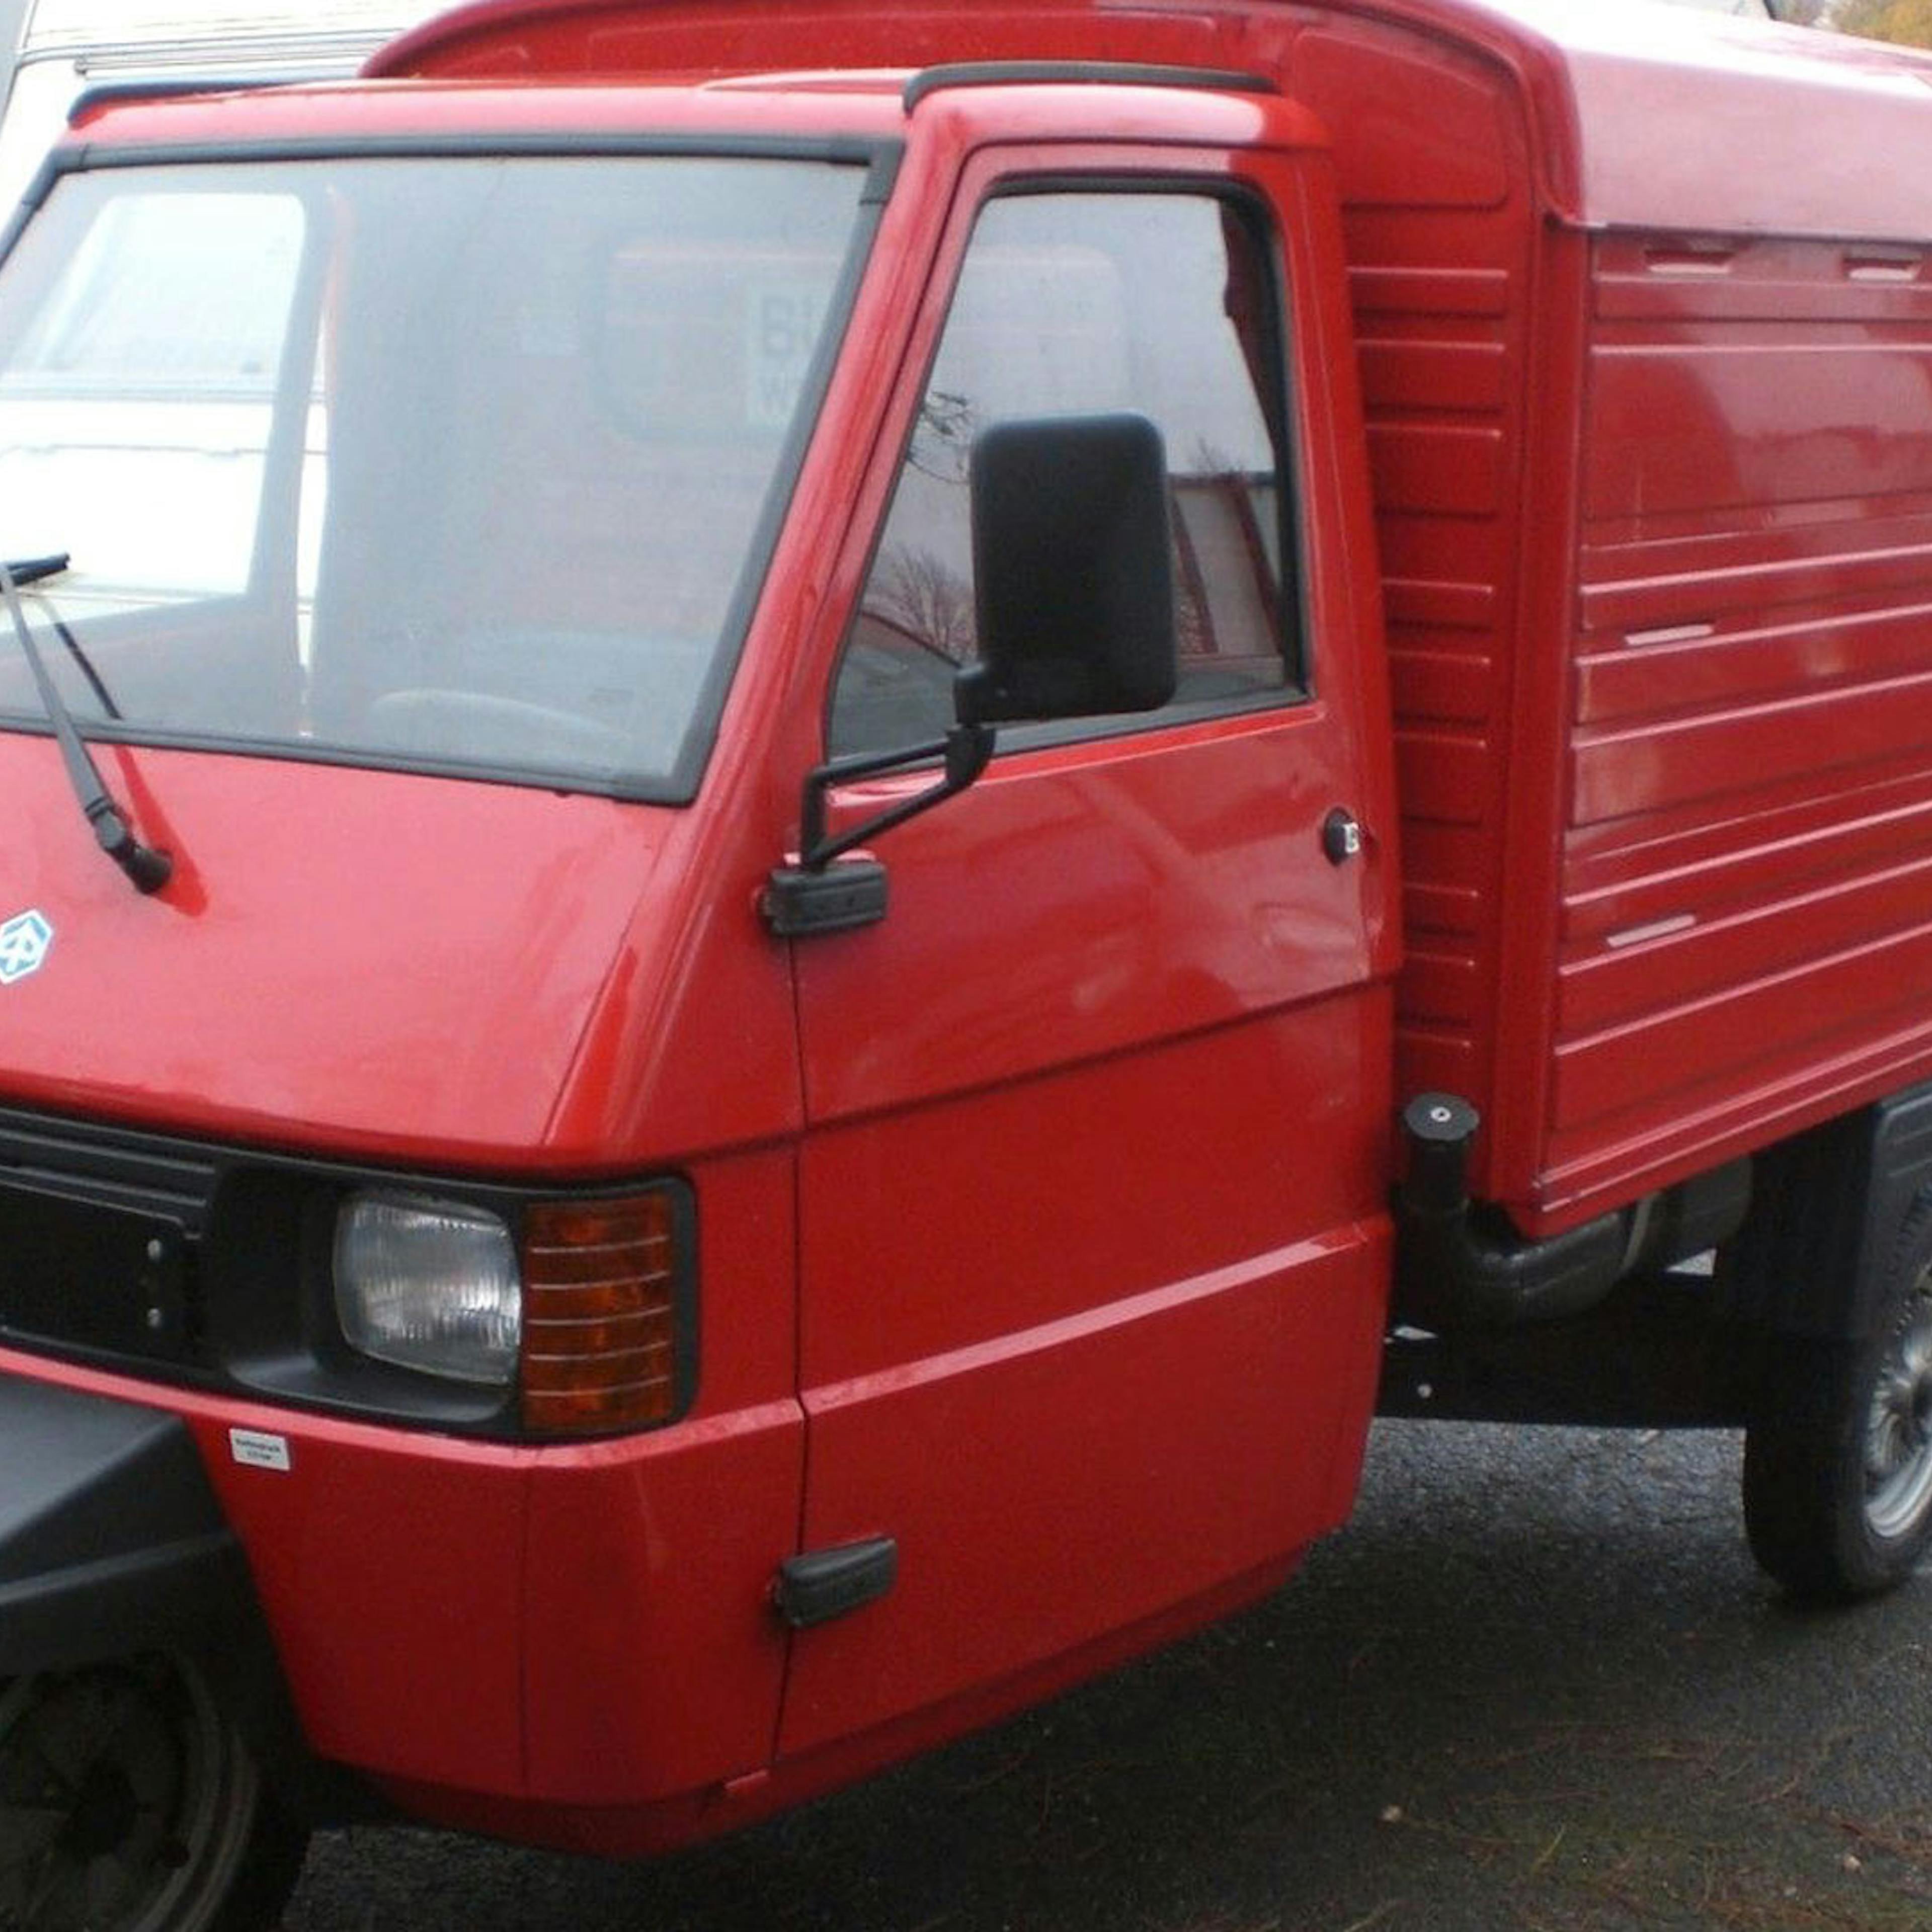 Ein rotes Piaggio Ape Microcar steht auf einem Parkplatz.